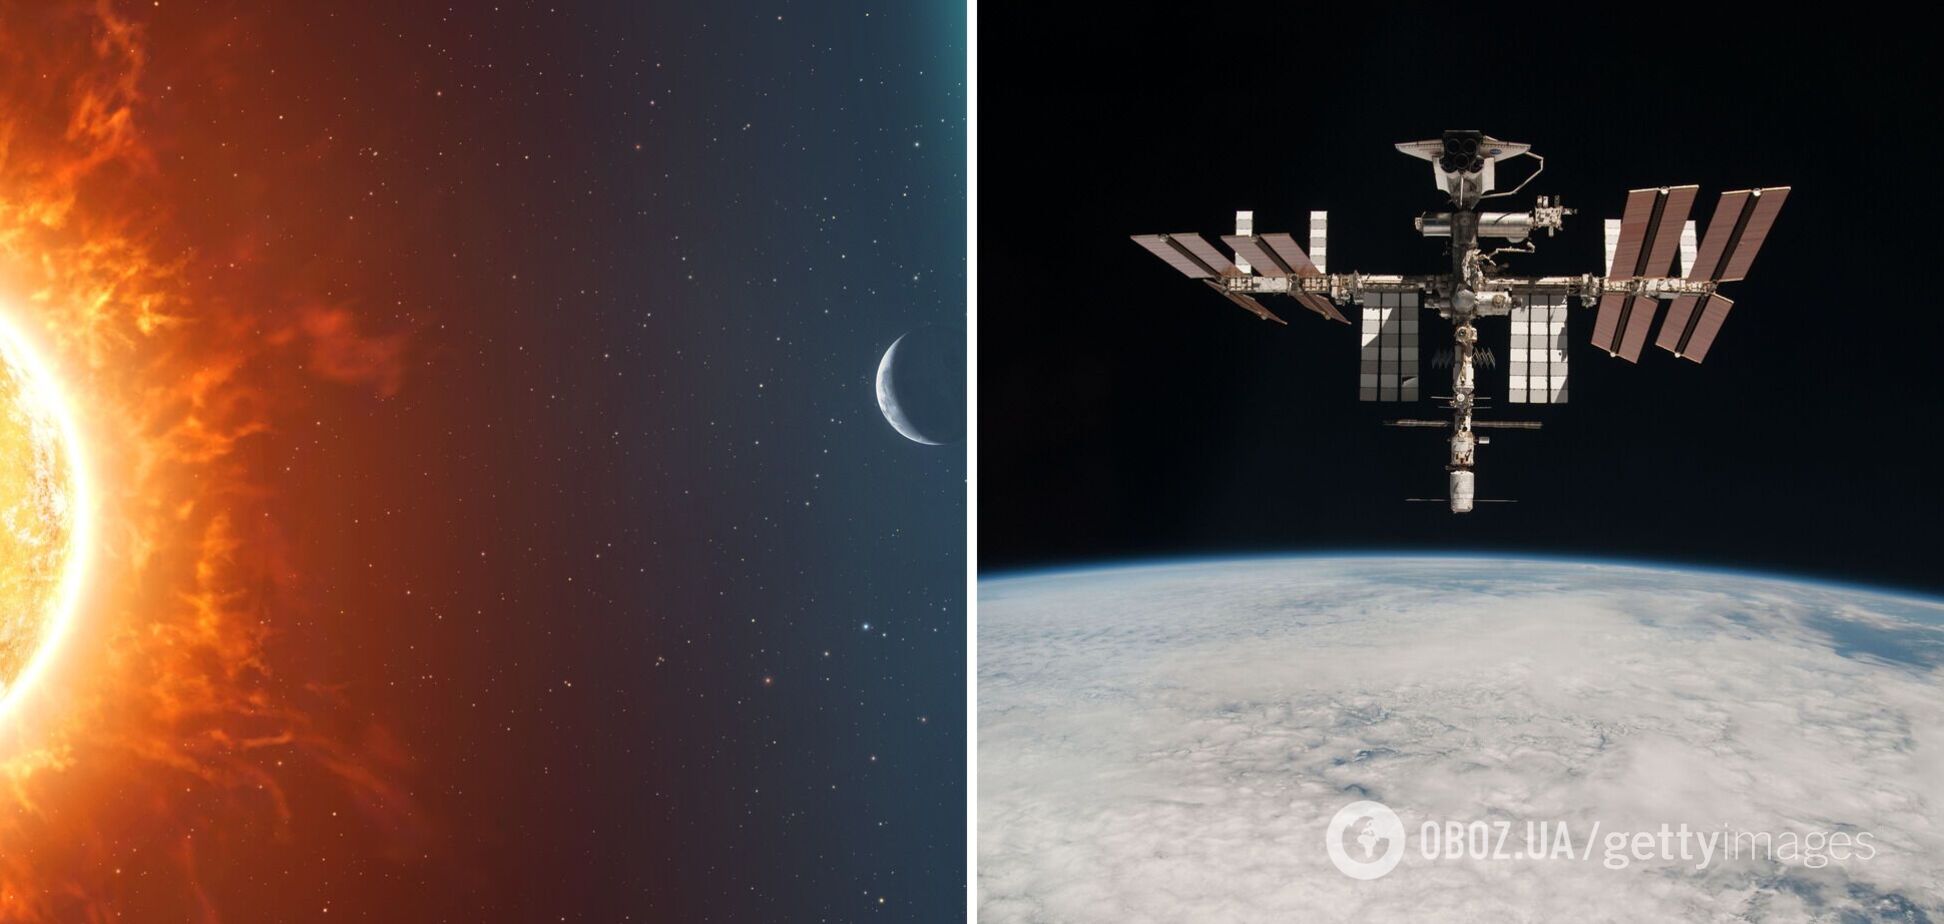 Такого вы еще не видели! Астронавты на МКС сняли золотое свечение в атмосфере Земли